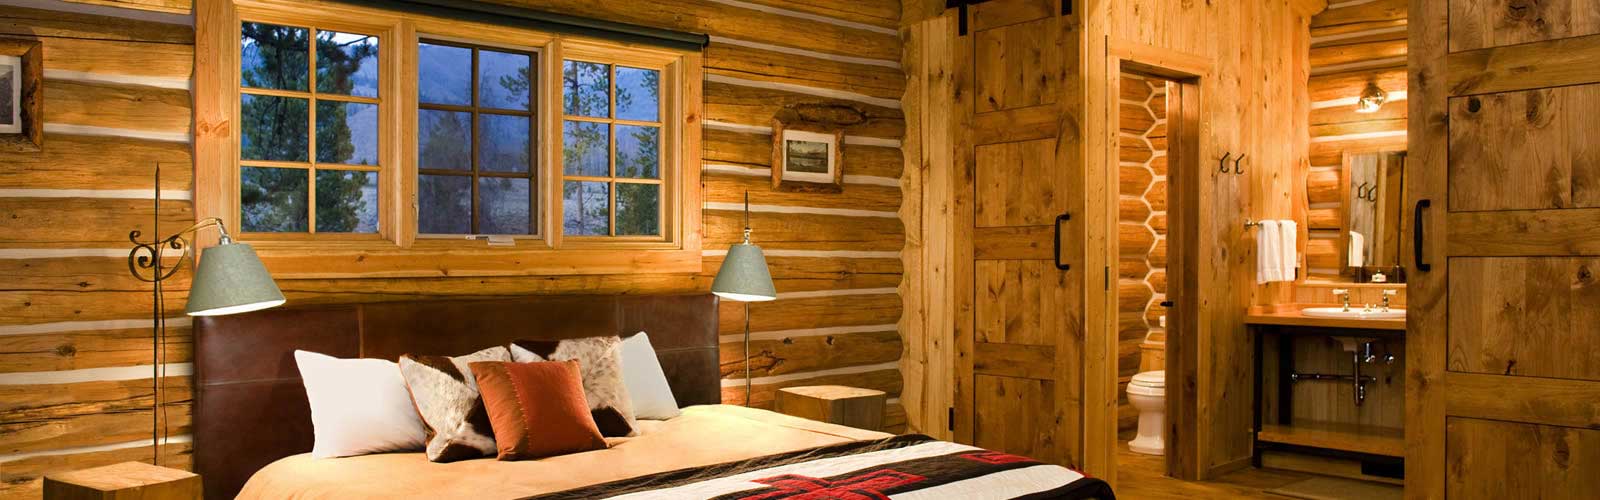 A cozy cabin bedroom